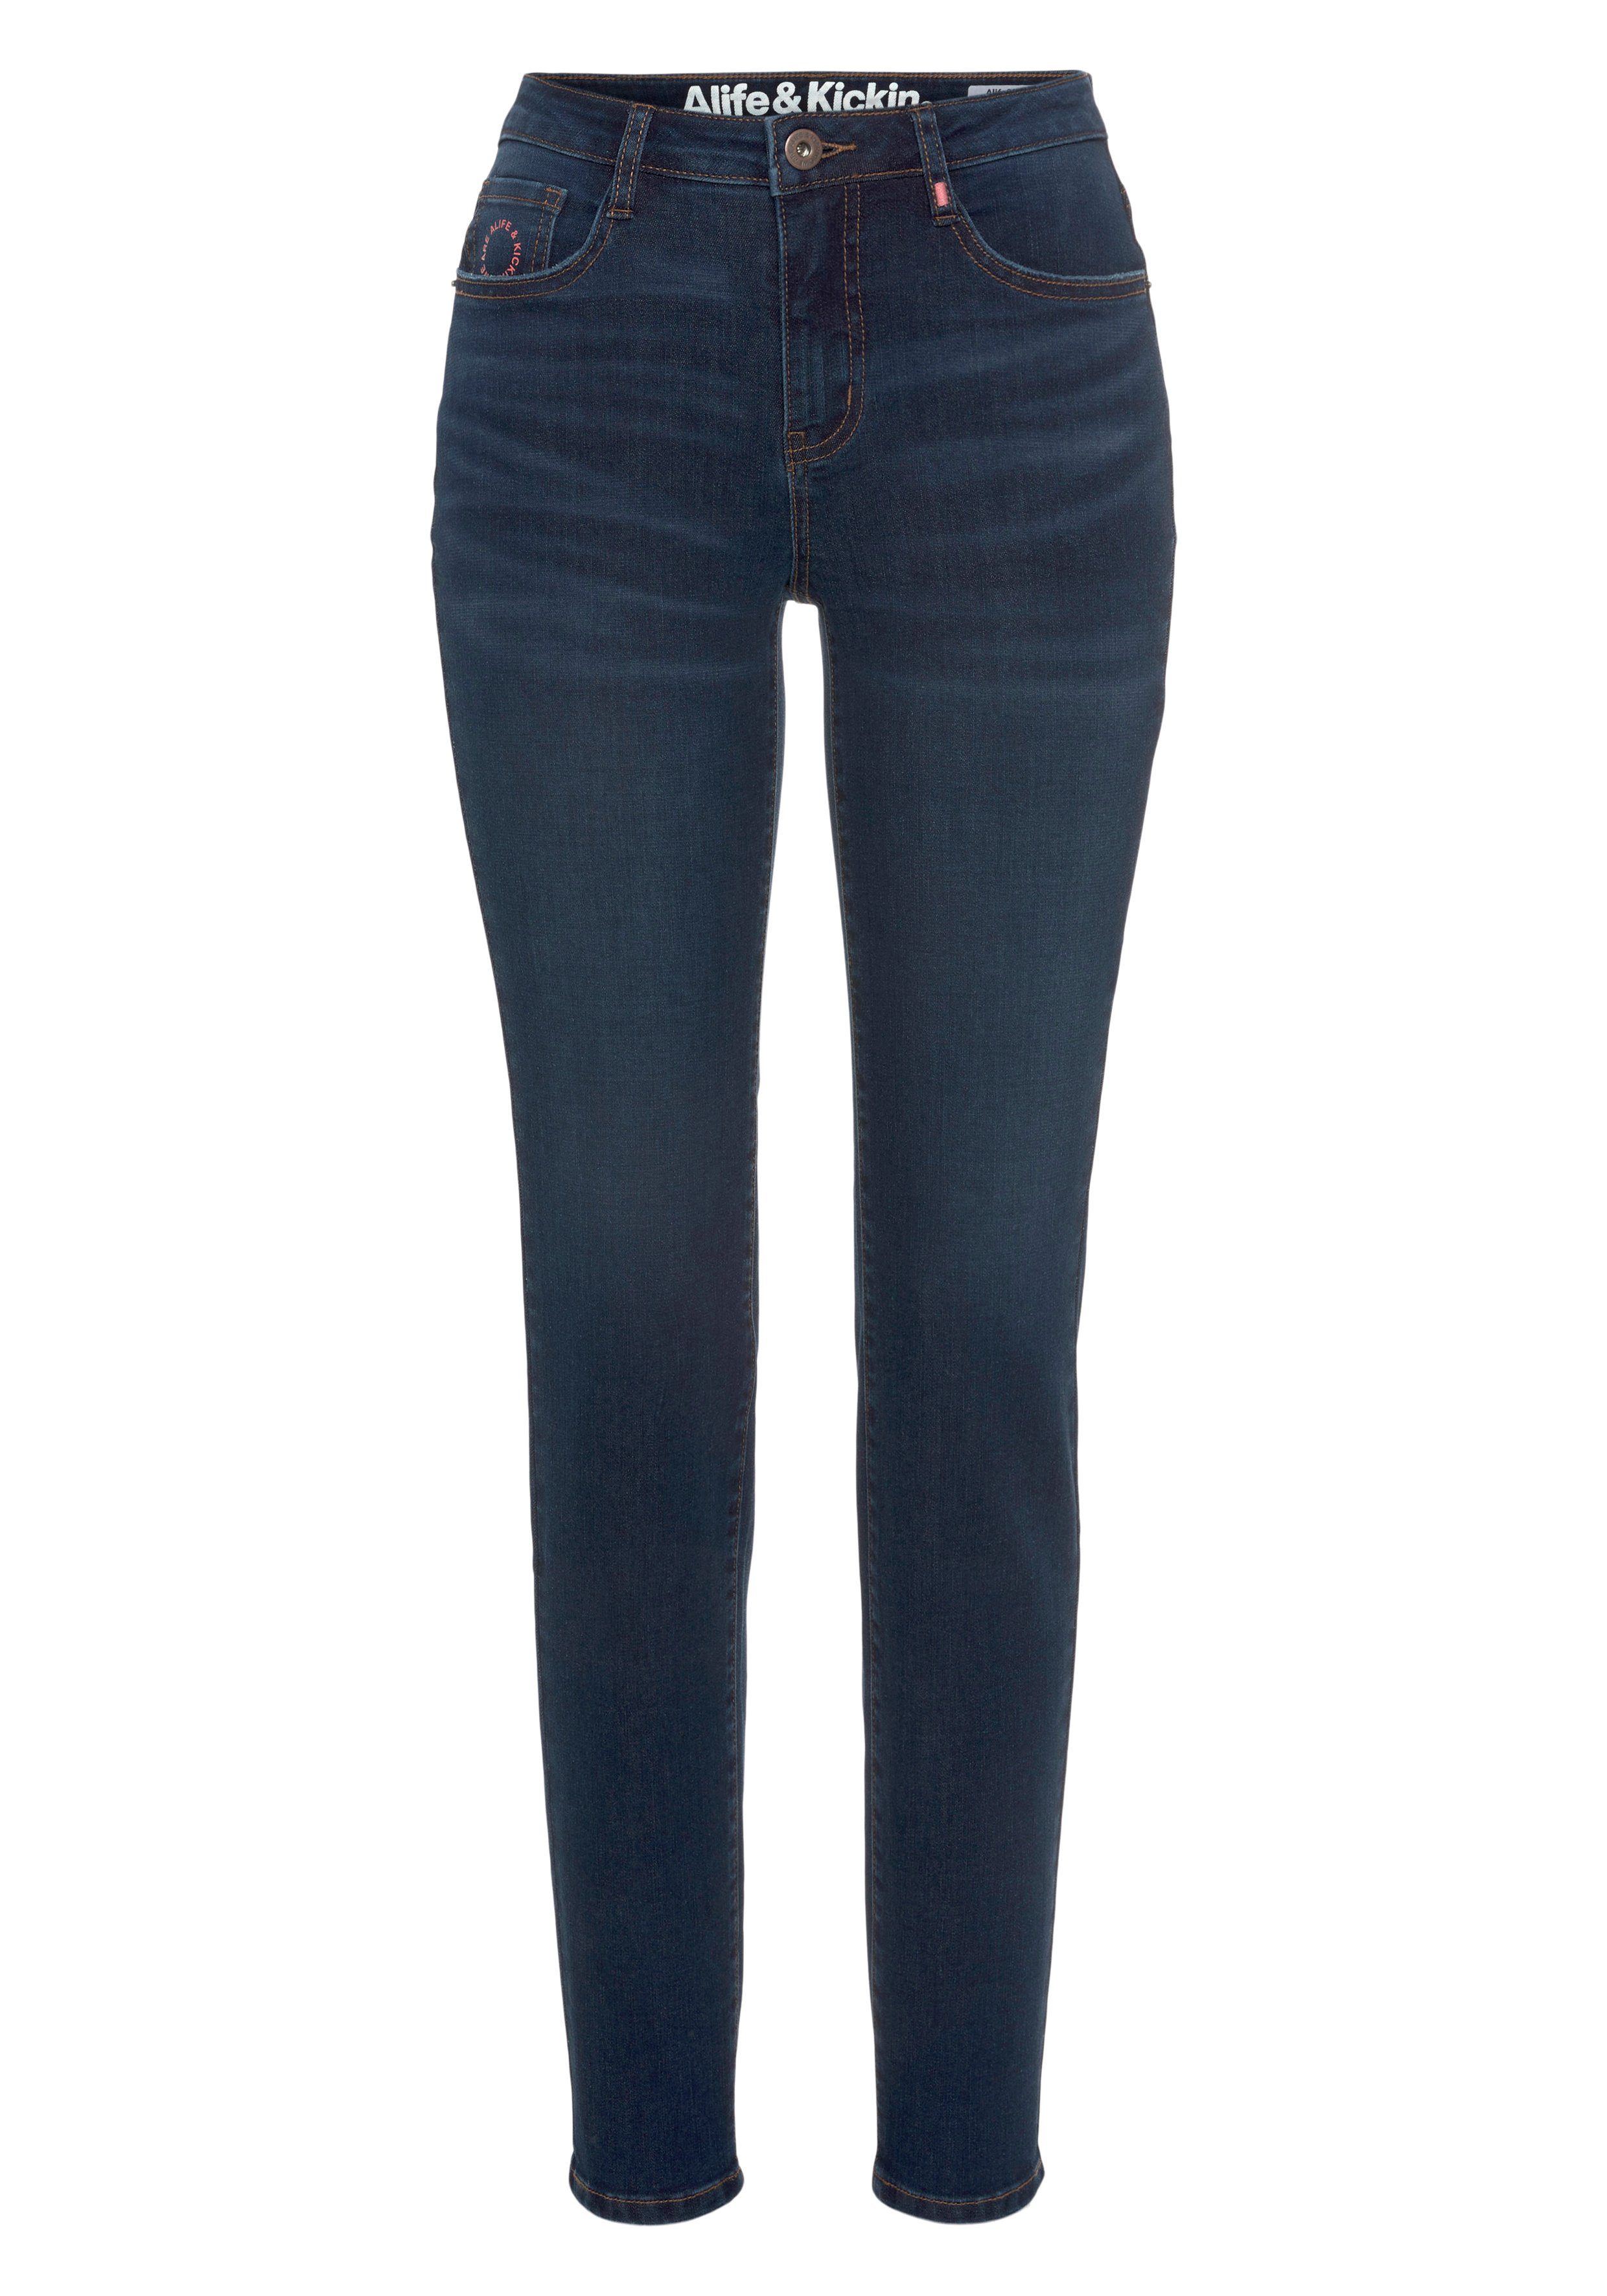 Alife used NEUE High-waist-Jeans & Kickin KOLLEKTION used Slim-Fit NolaAK dark blue